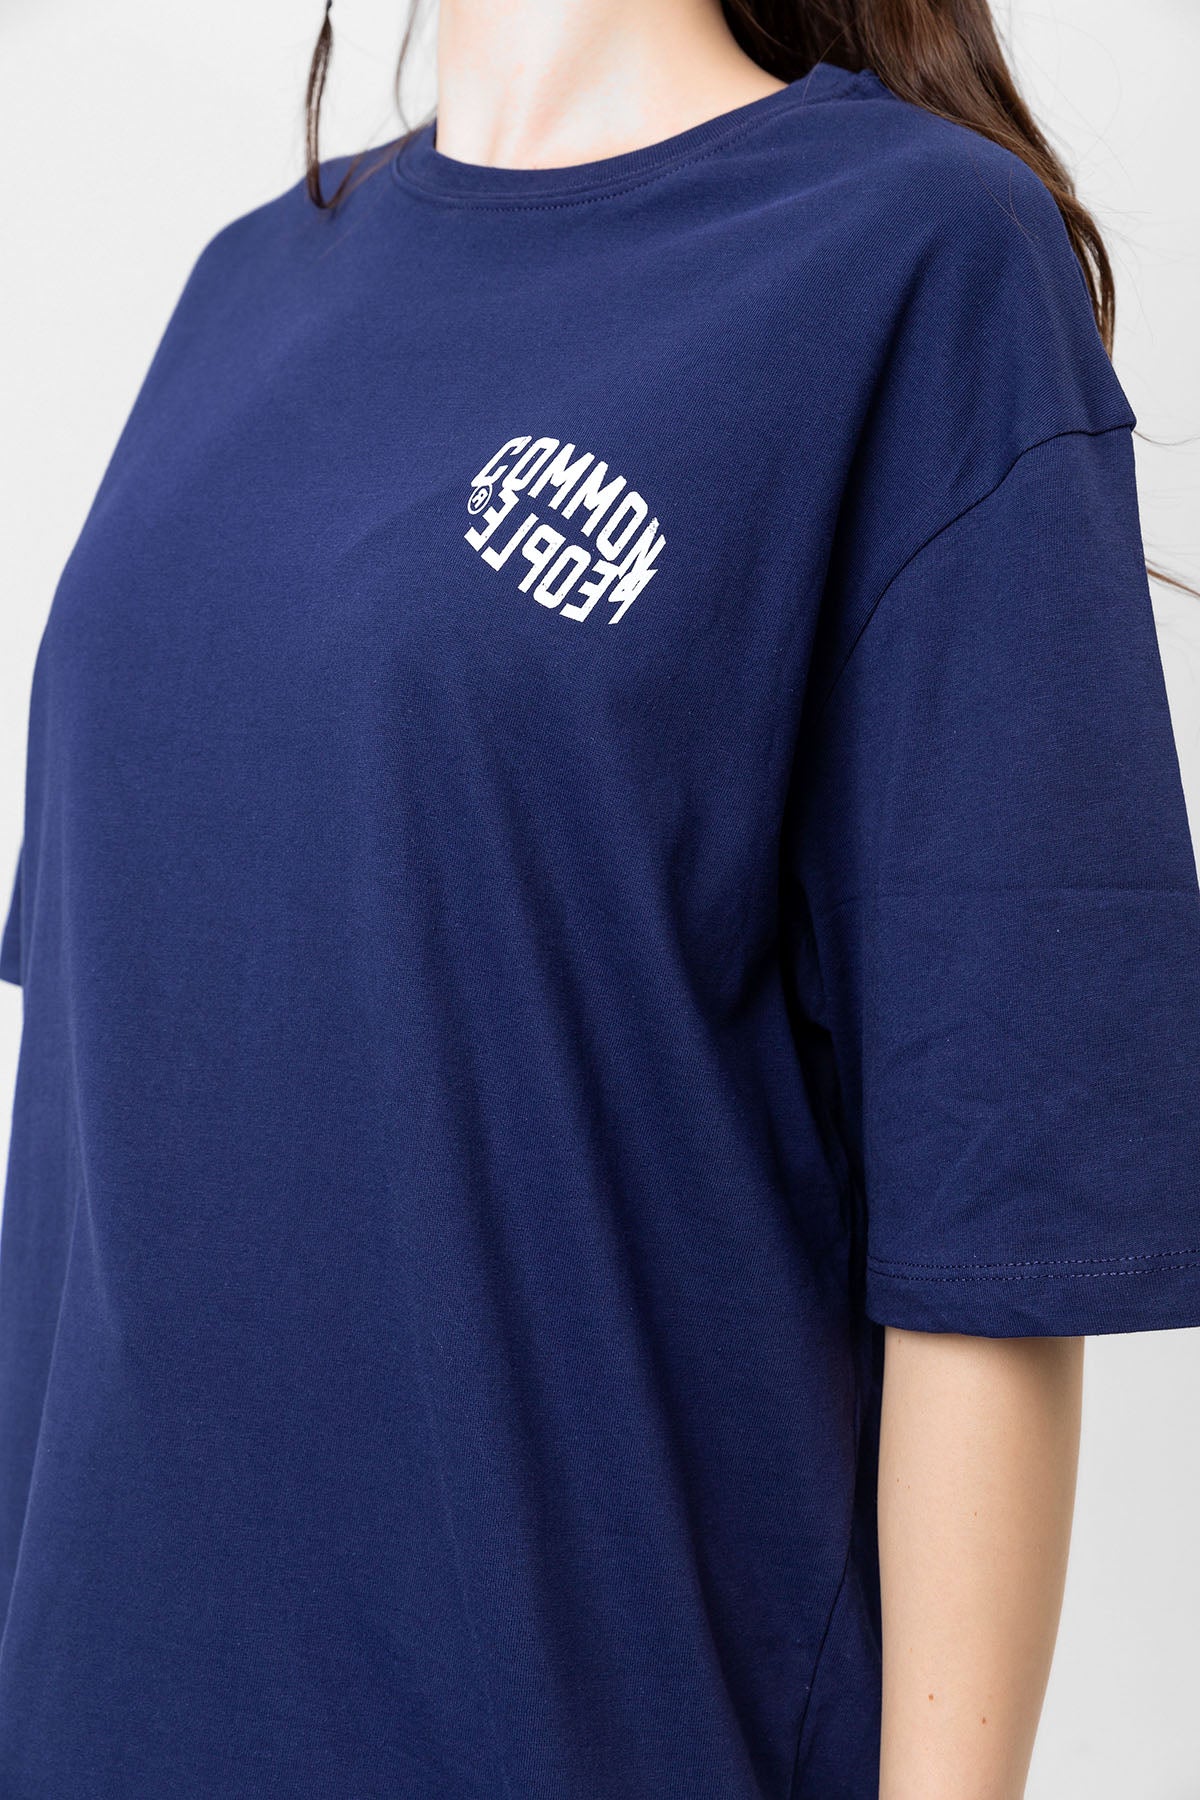 Extrovert Navy Blue Oversized T-shirt